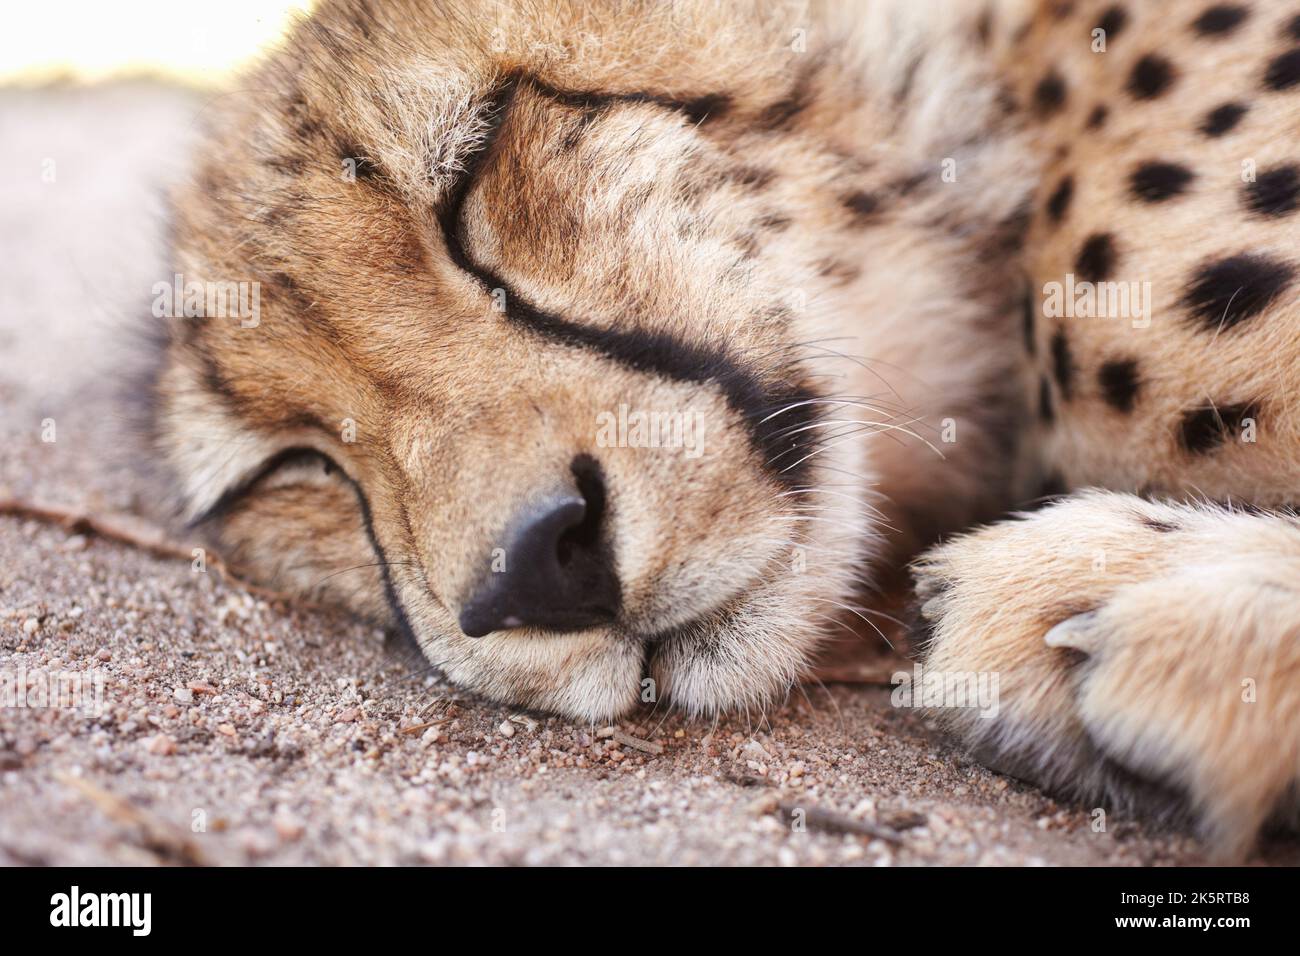 Gepard, Wildtiere und junge Tiere schlafen, sich ausruhen oder entspannen in einem Zoo, in dem es gefangen gehalten wird. Nahaufnahme von Raubtieren, Jägern oder Wildkatzen, die ruhen Stockfoto